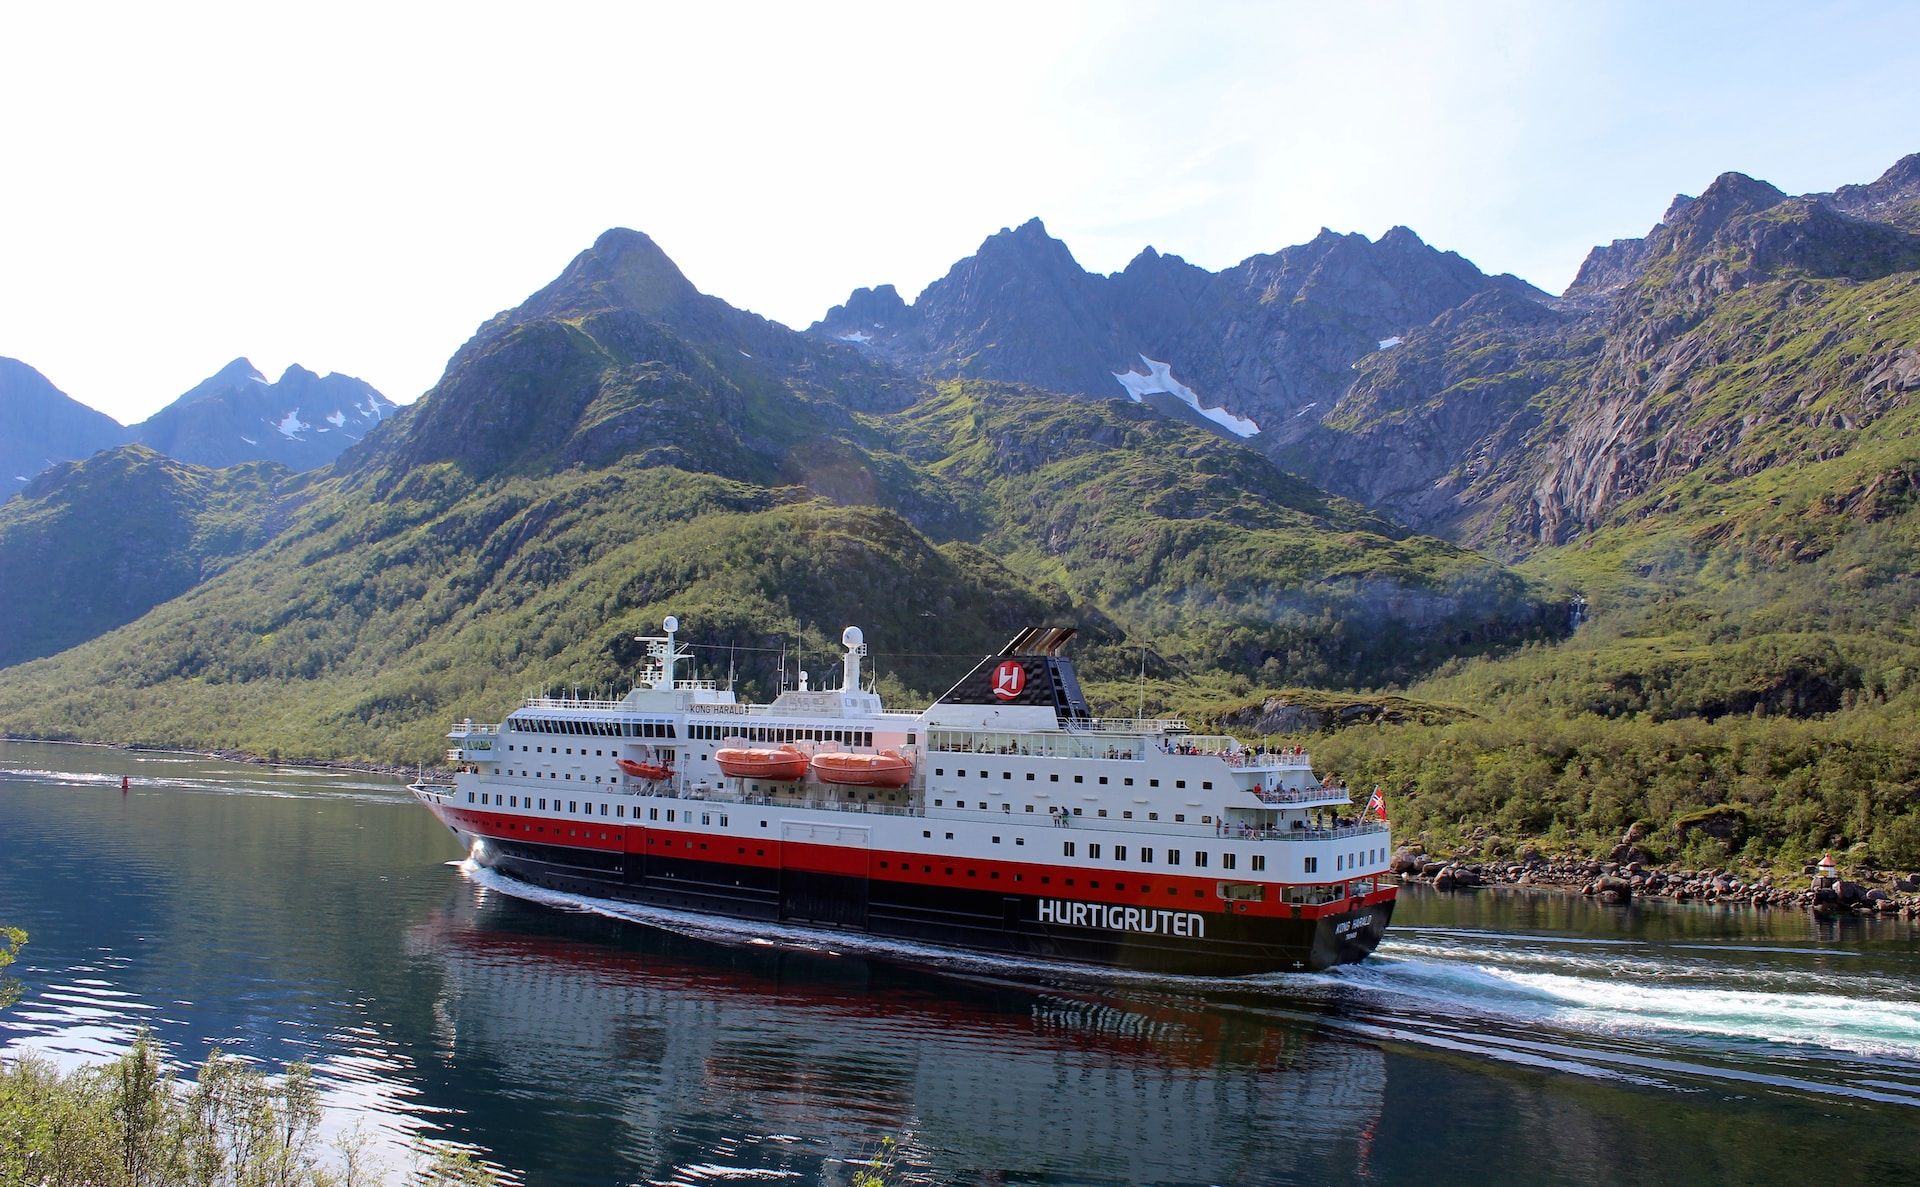 A Hurtigruten Cruise Ship